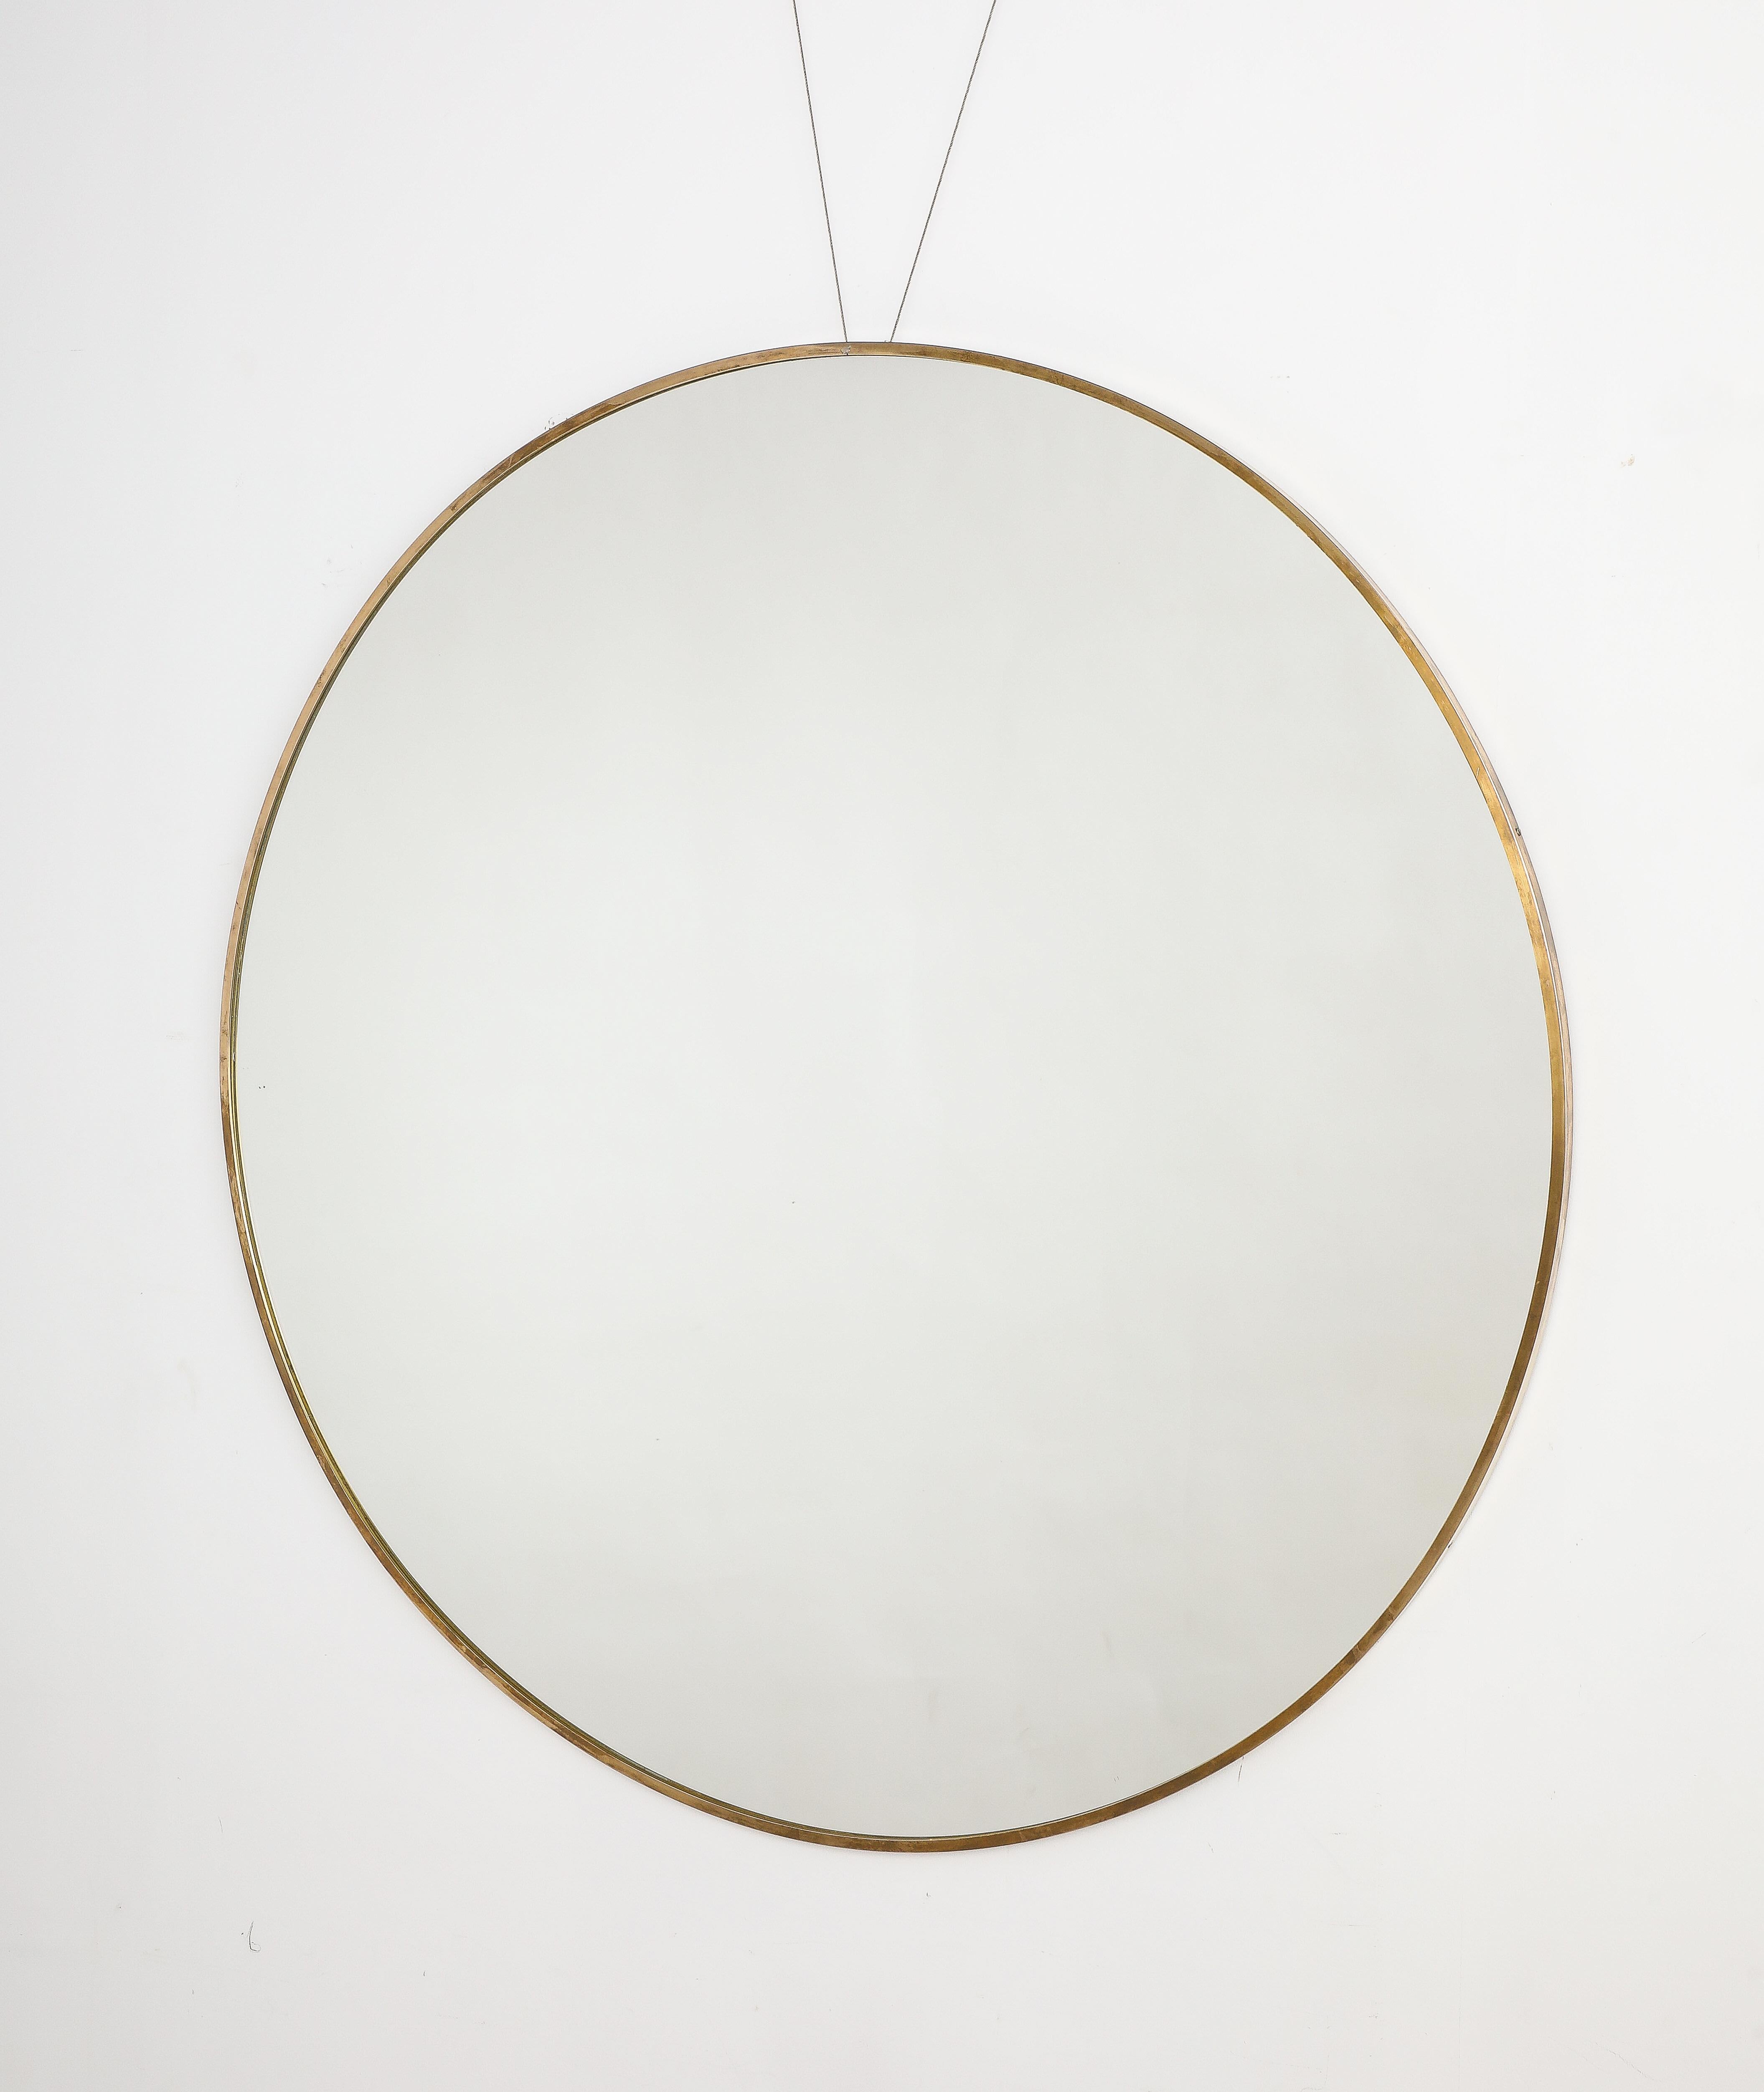 Rare miroir circulaire moderniste italien en laiton de grande taille.  Magnifique patine d'usage, taille impressionnante.  Il s'agit d'un complément idéal à tout style d'intérieur.
Italie, vers 1950 
Taille : 45 1/2